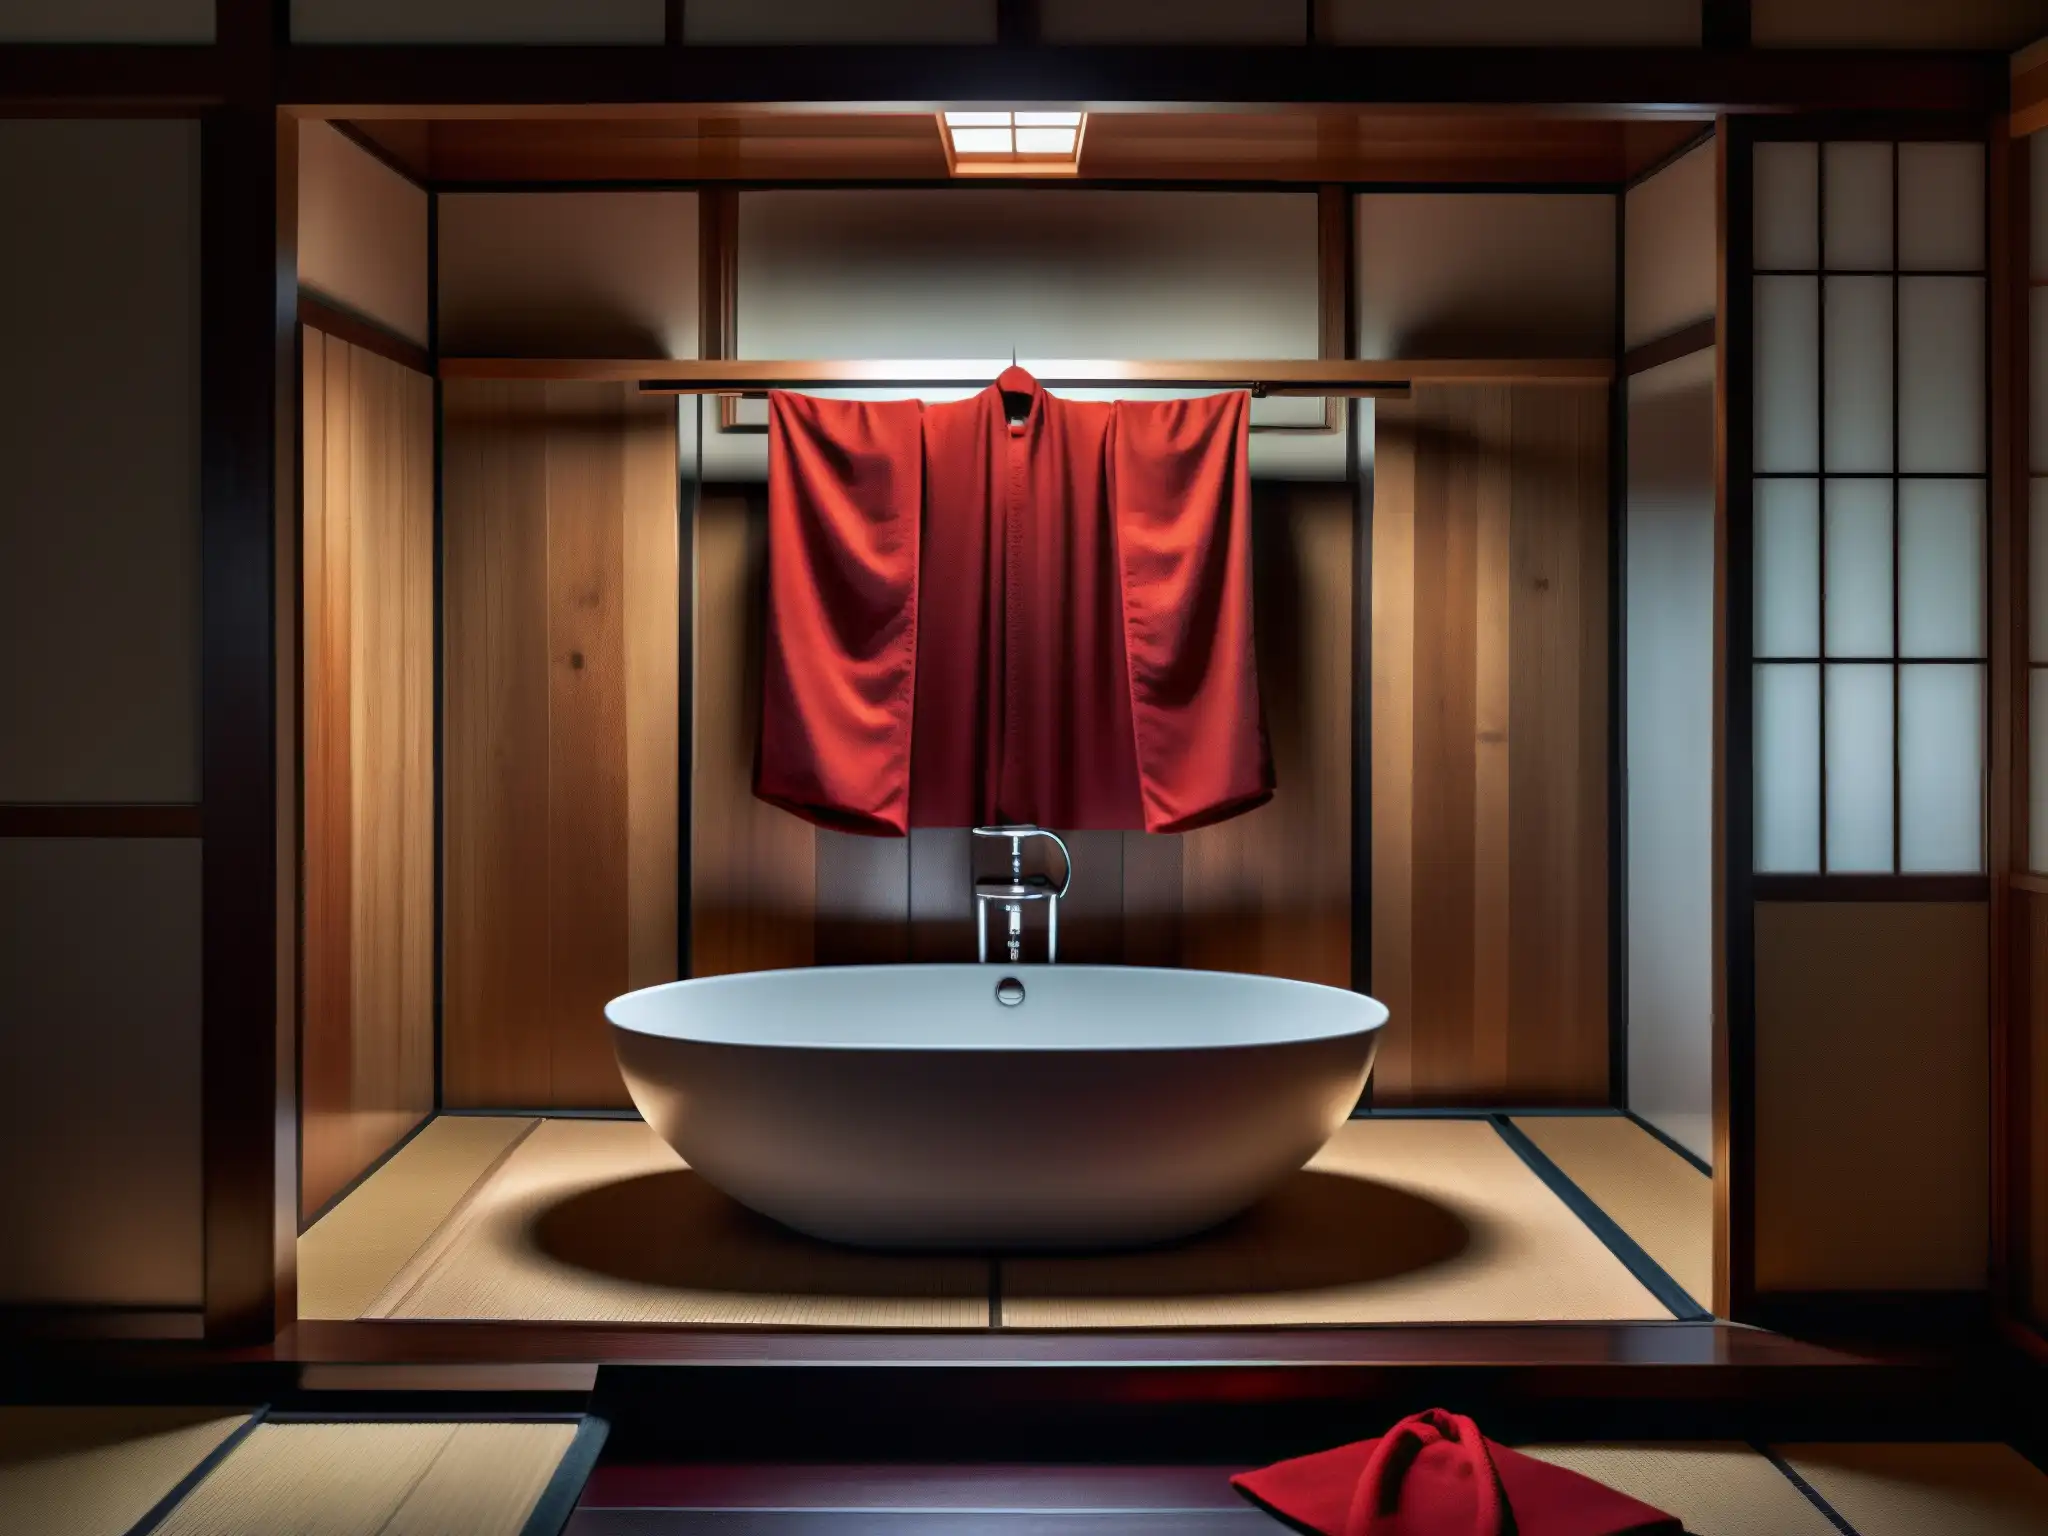 Un baño japonés tradicional con atmósfera misteriosa, un kimono rojo y reflejos siniestros